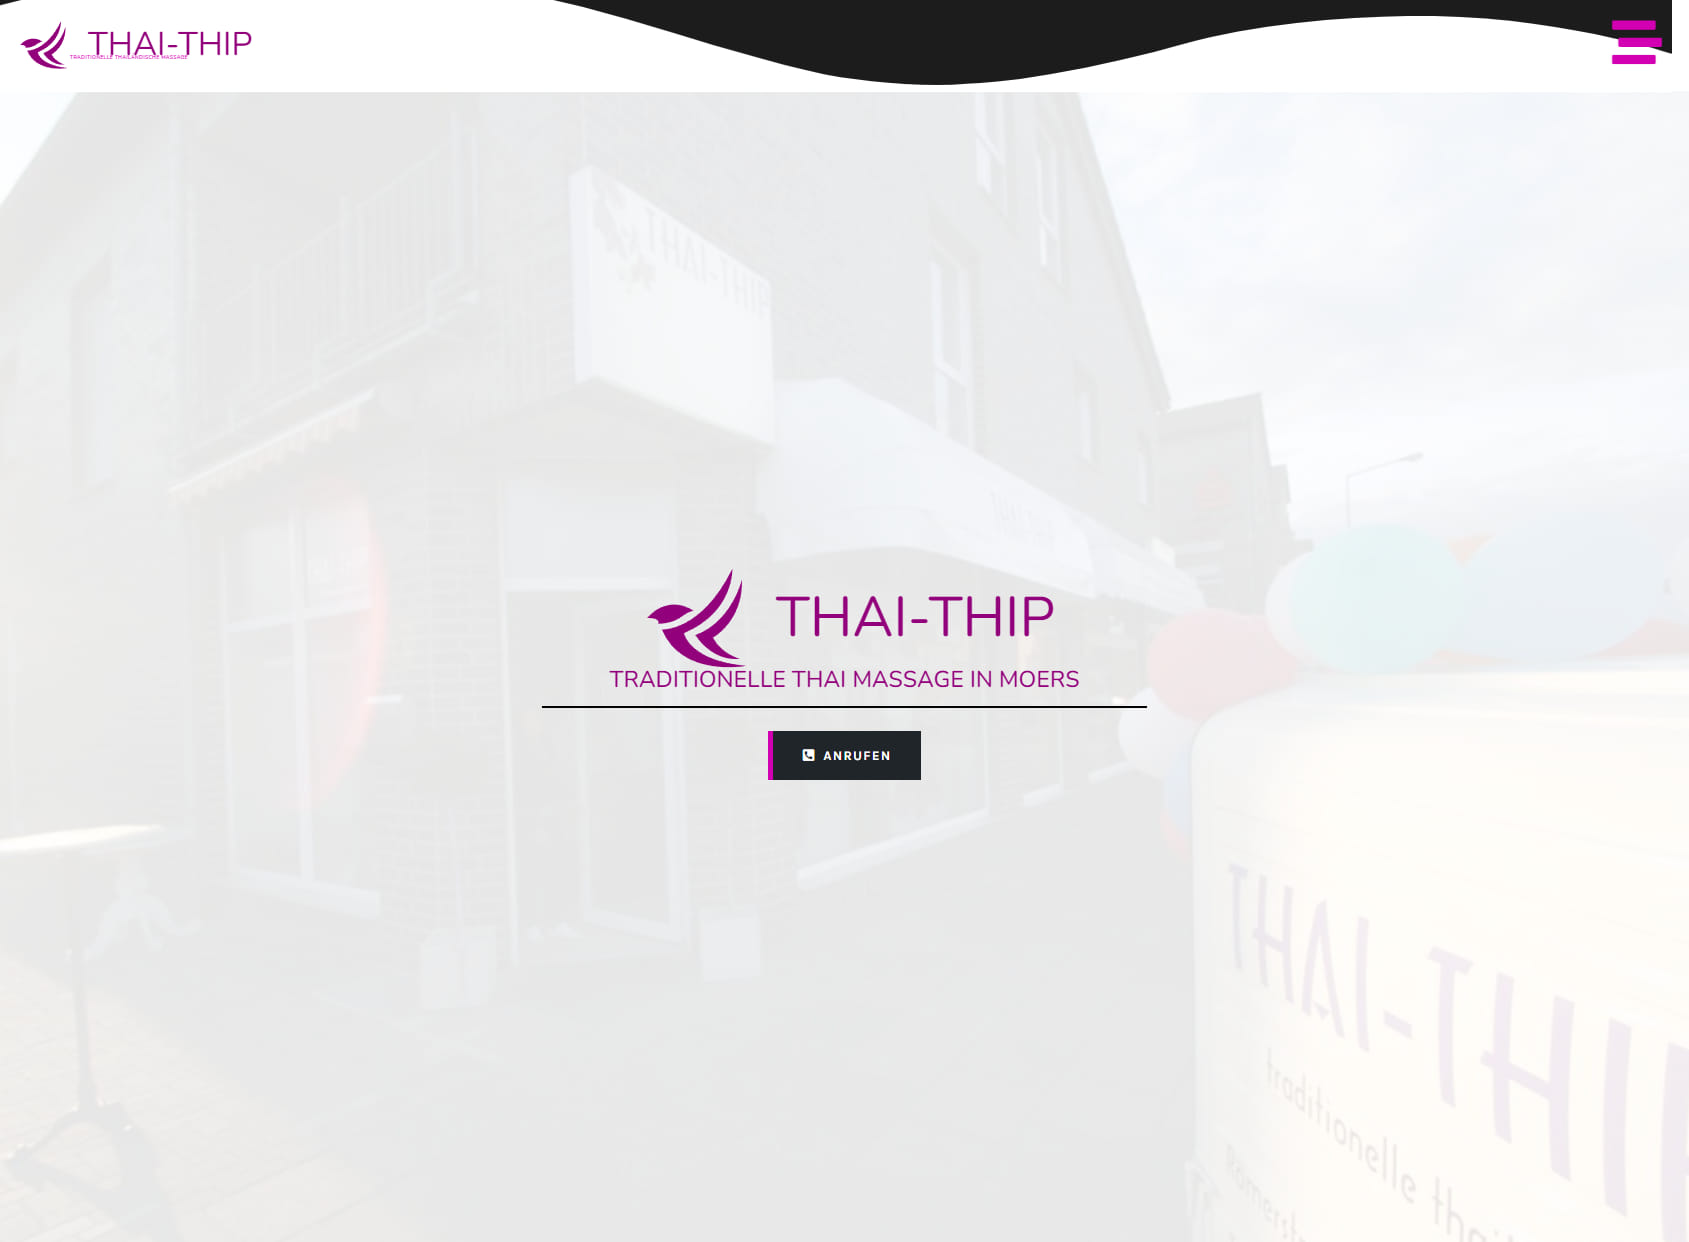 Thai-Thip